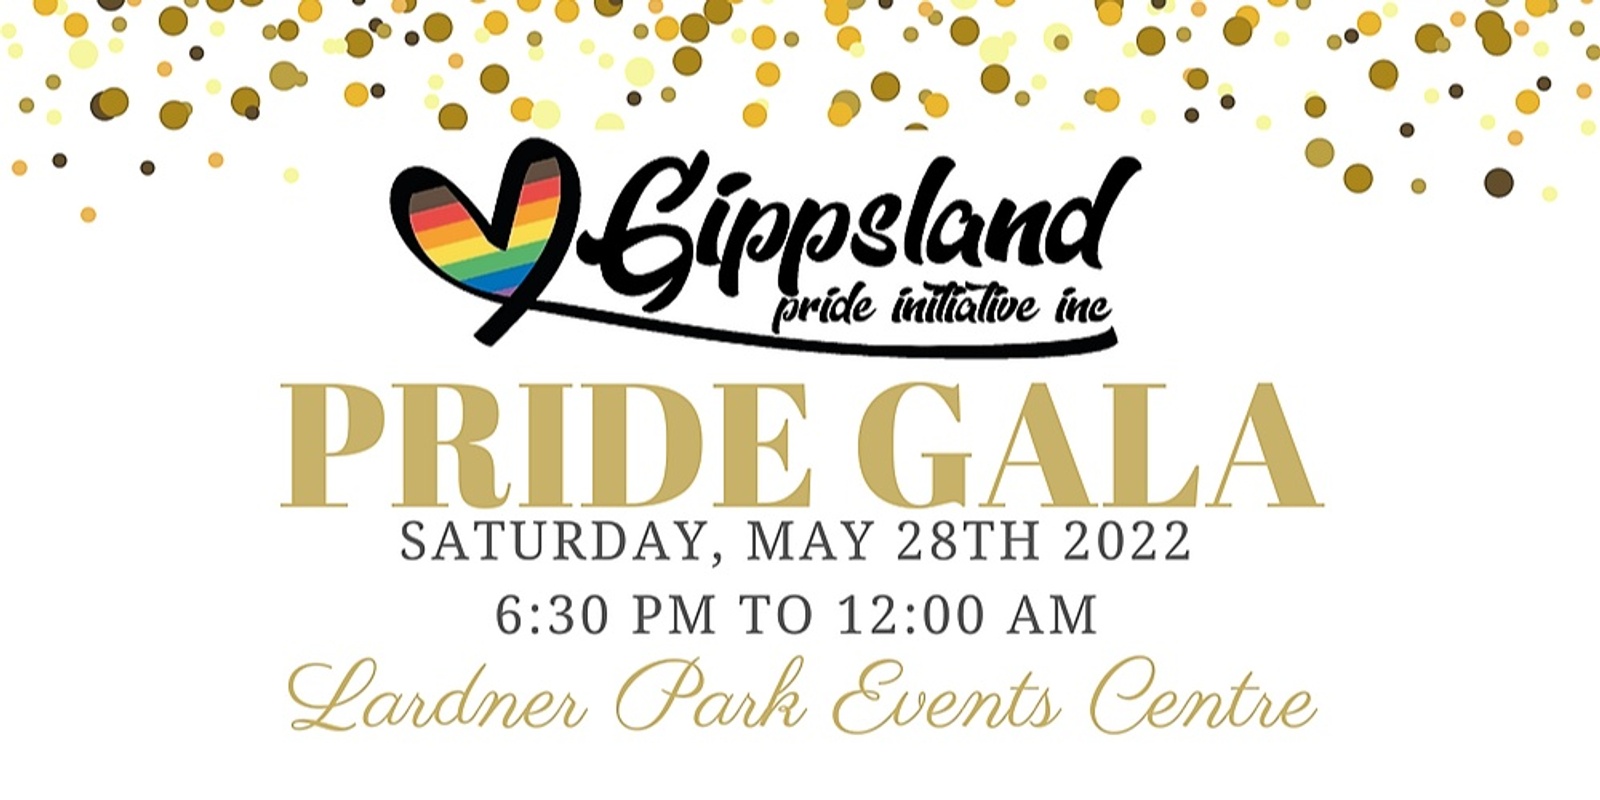 Banner image for Gippsland Pride Gala 2022